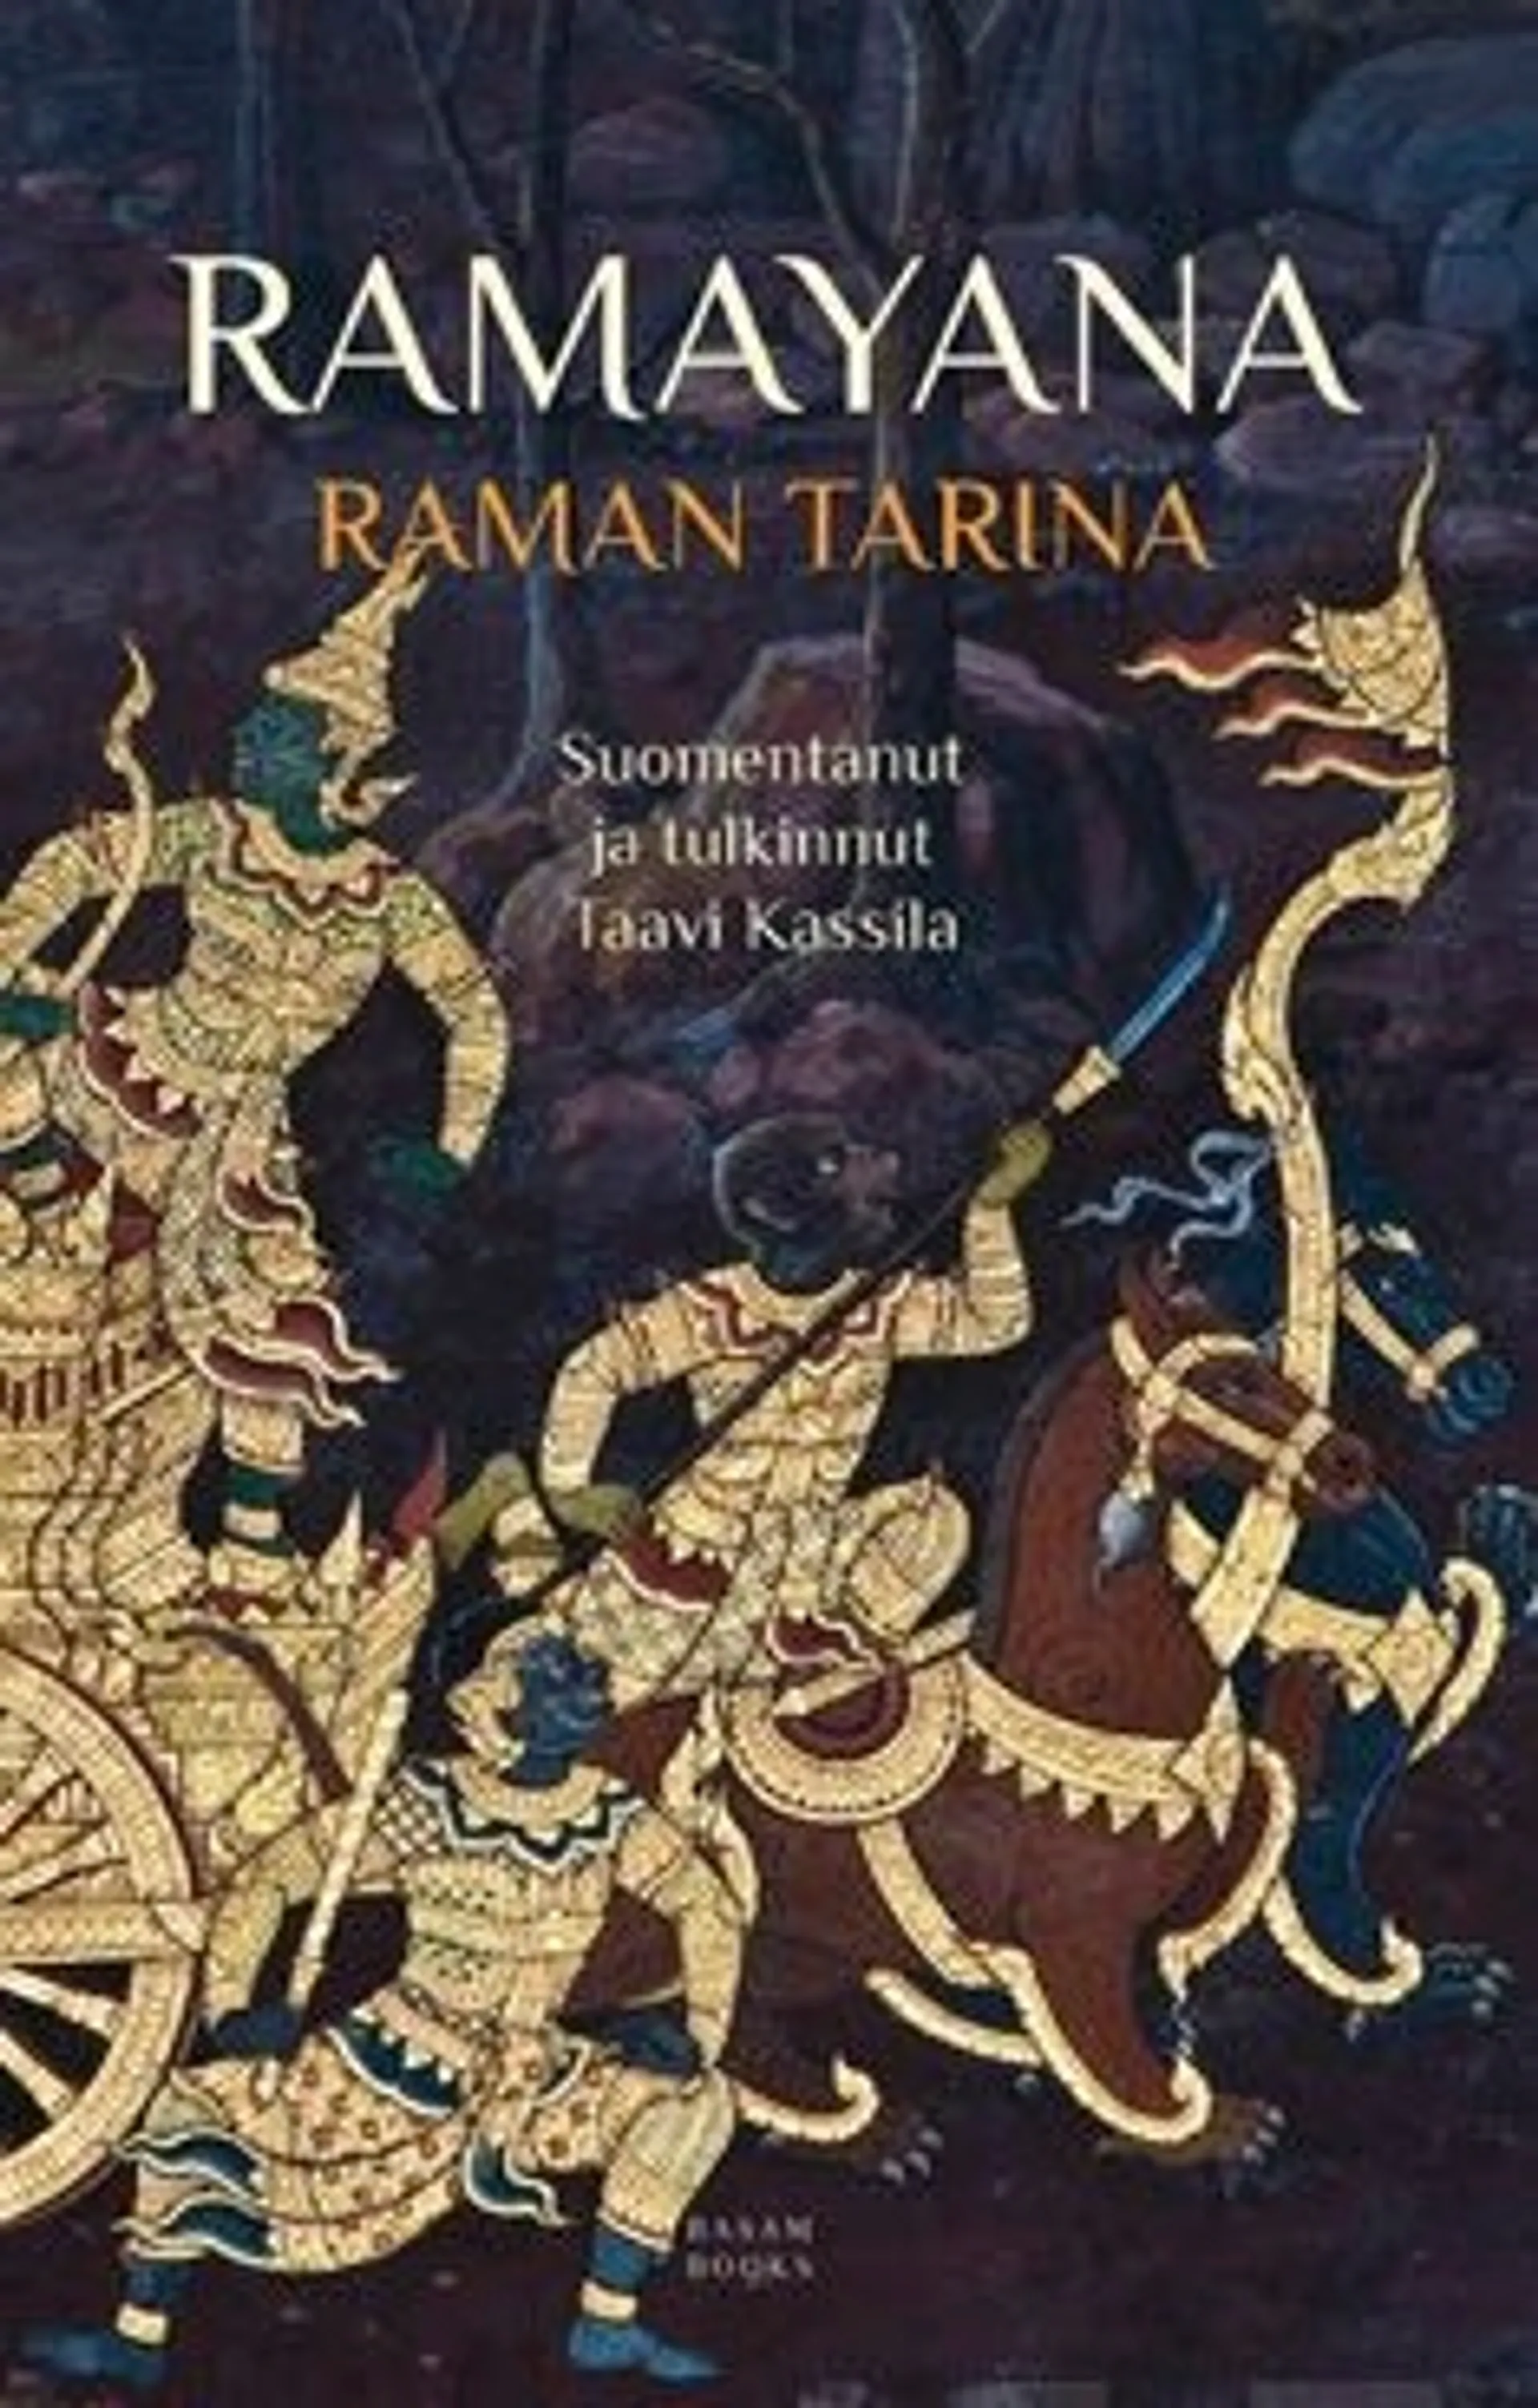 Ramayana - Raman tarina